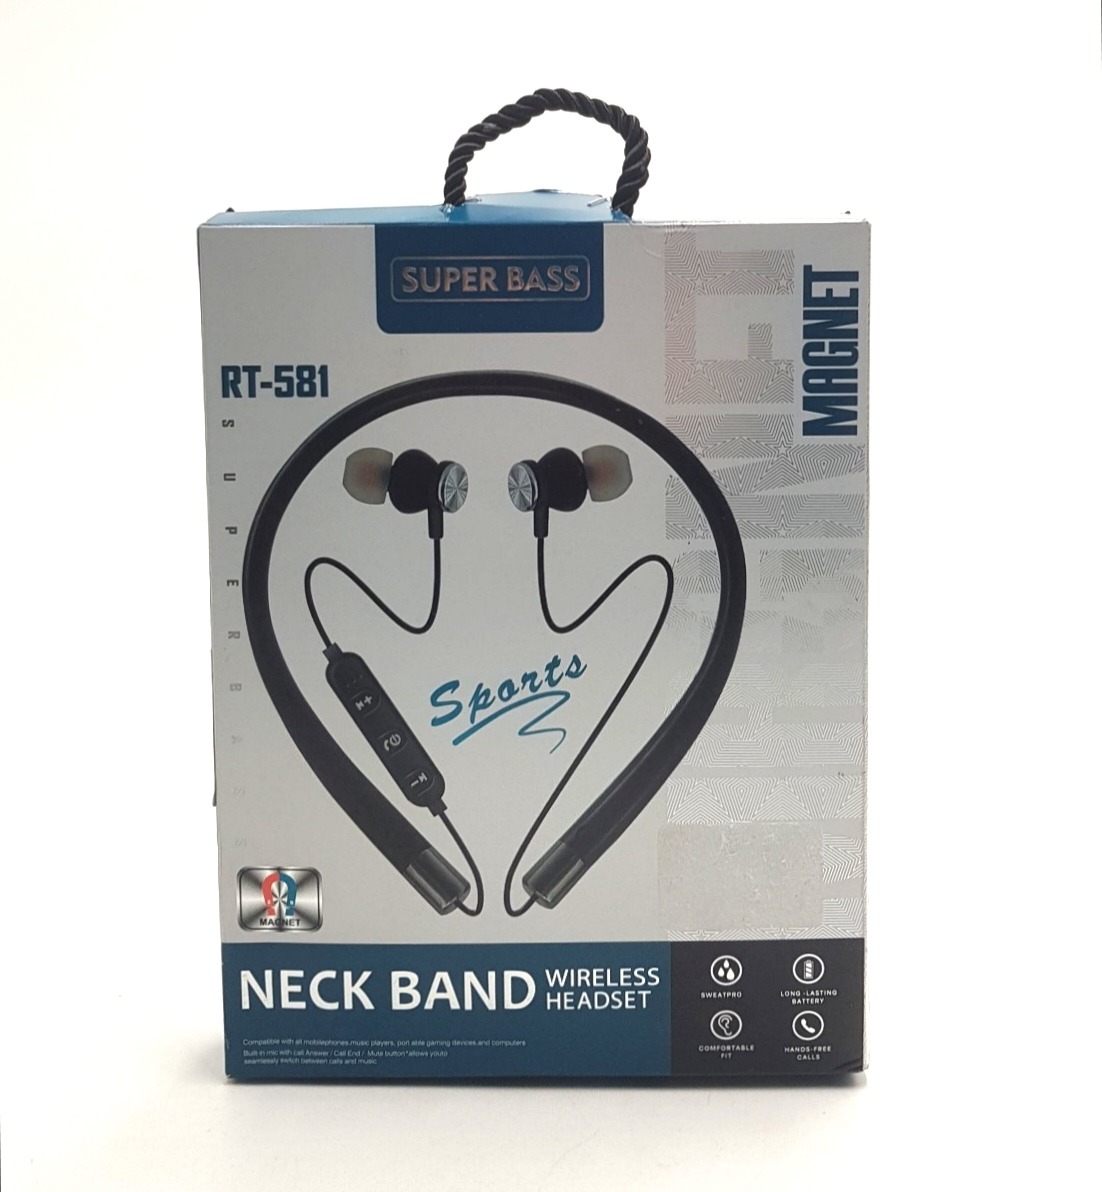 Neck Band Wireless Headset RT-581